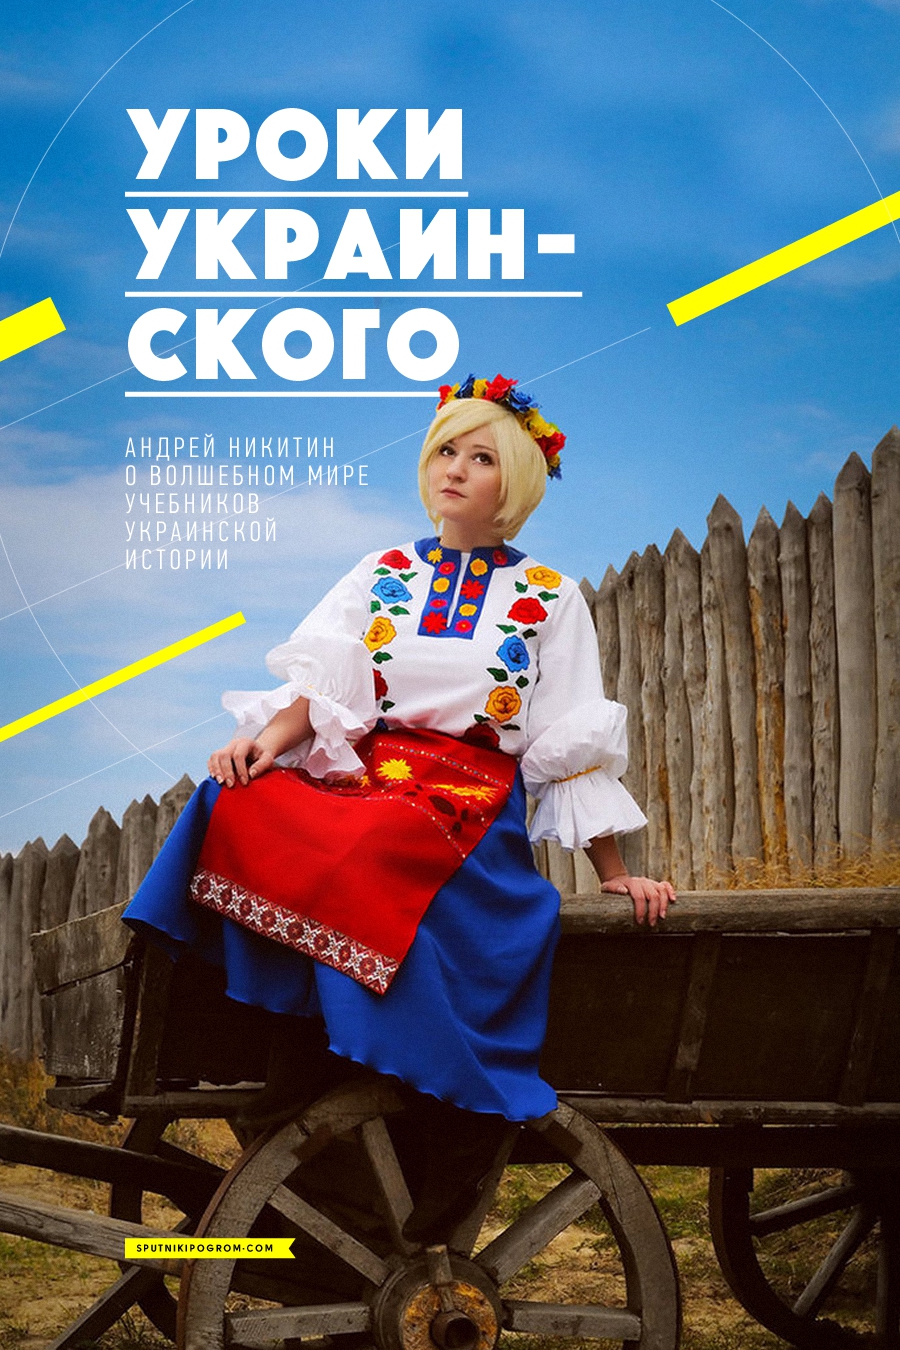 Уроки украинского: чему учат школьников учебники украинской истории? дети, история, украина, учебники